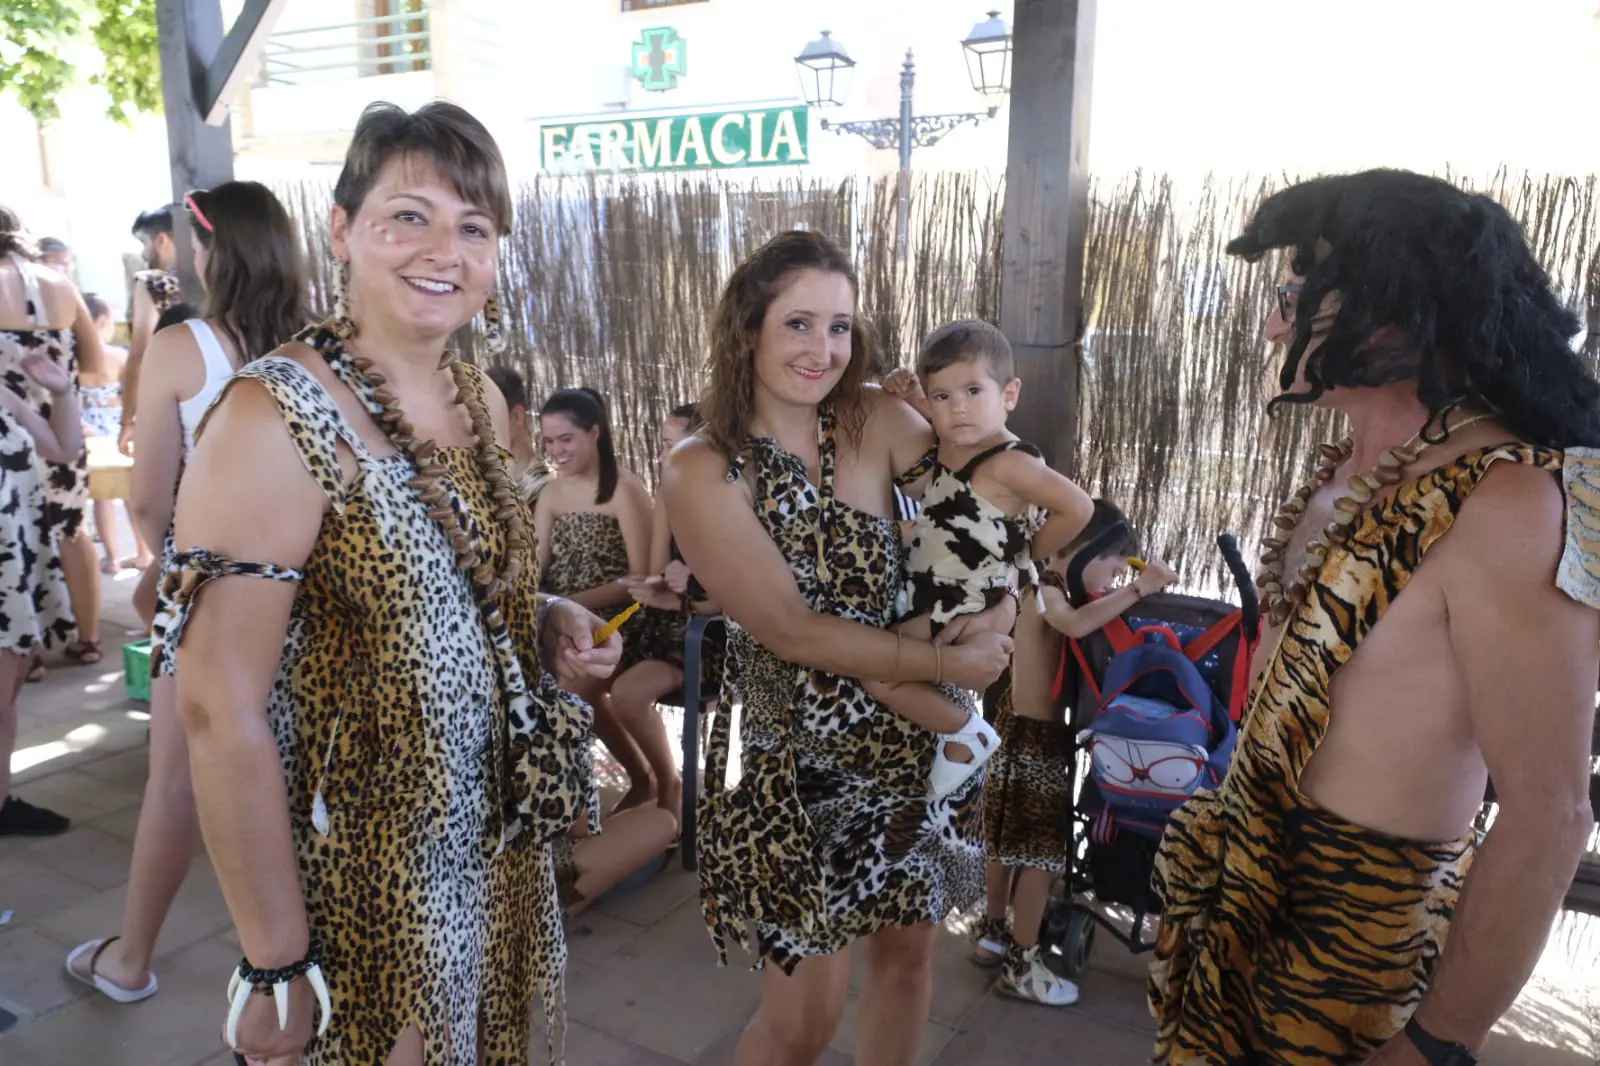 Talleres, visitas teatralizadas, coreografías y una barbaoca troglodita animan la fiesta en la localidad granadina